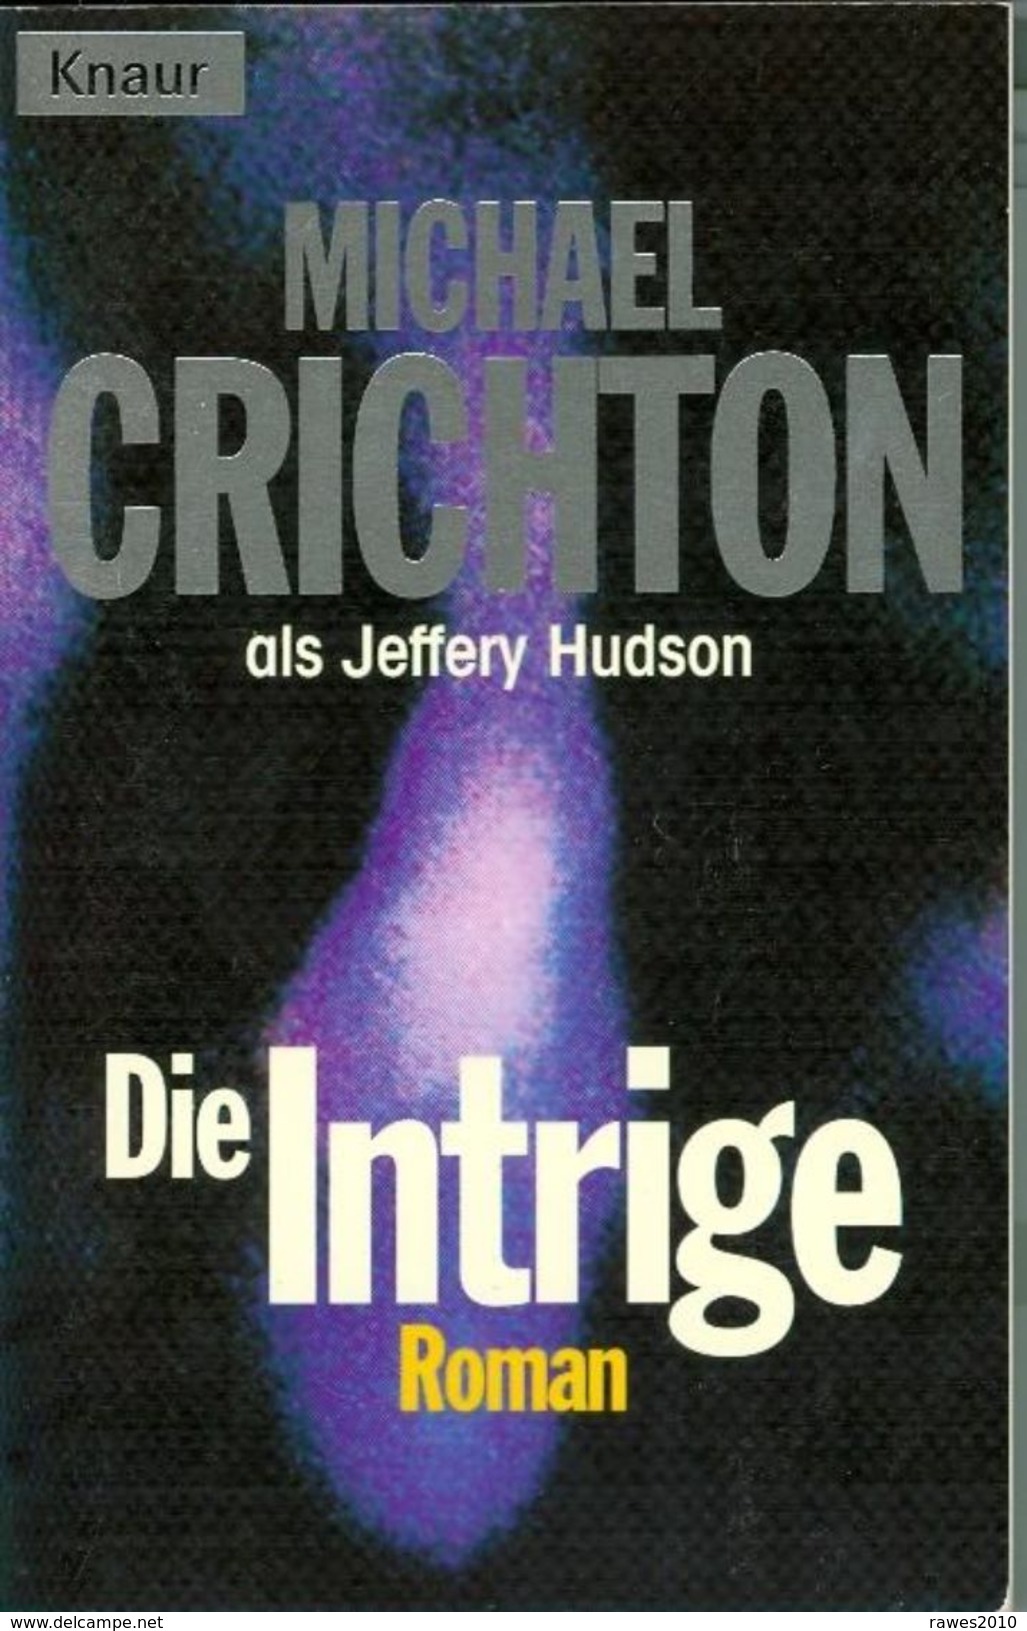 Buch: Michael Crichton: Die Intrige. Roman Knaur Verlag 1998 341 Seiten - Thriller